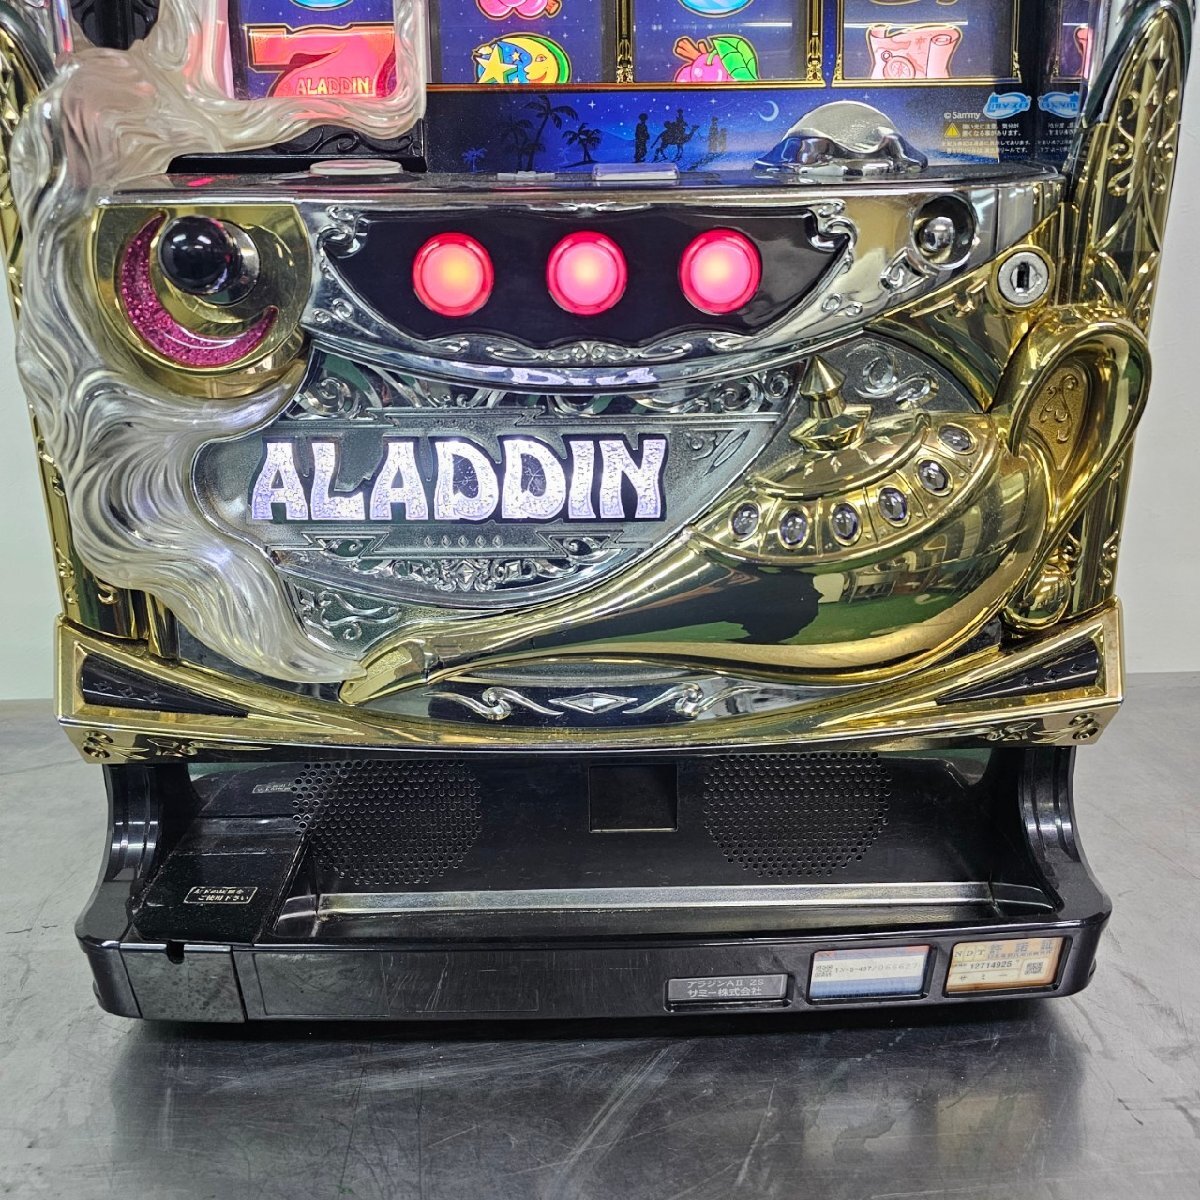  игровой автомат слот аппаратура [ Aladdin A II]sami- монета не необходимо источник питания для бытового использования рабочее состояние подтверждено /C4142